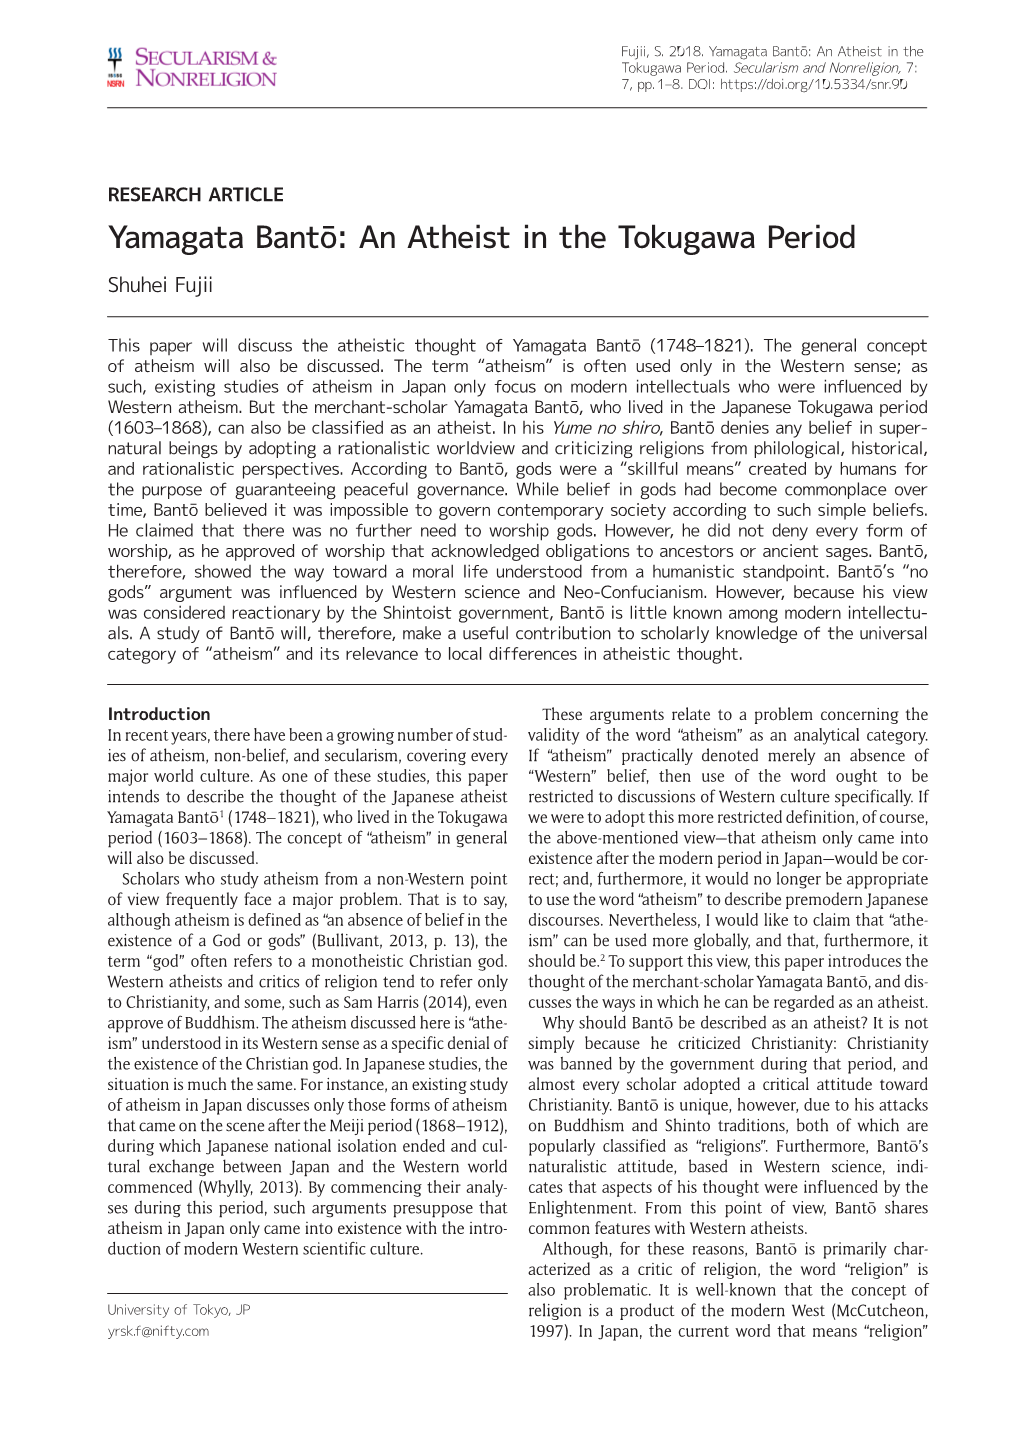 Yamagata Bantō: an Atheist in the Tokugawa Period